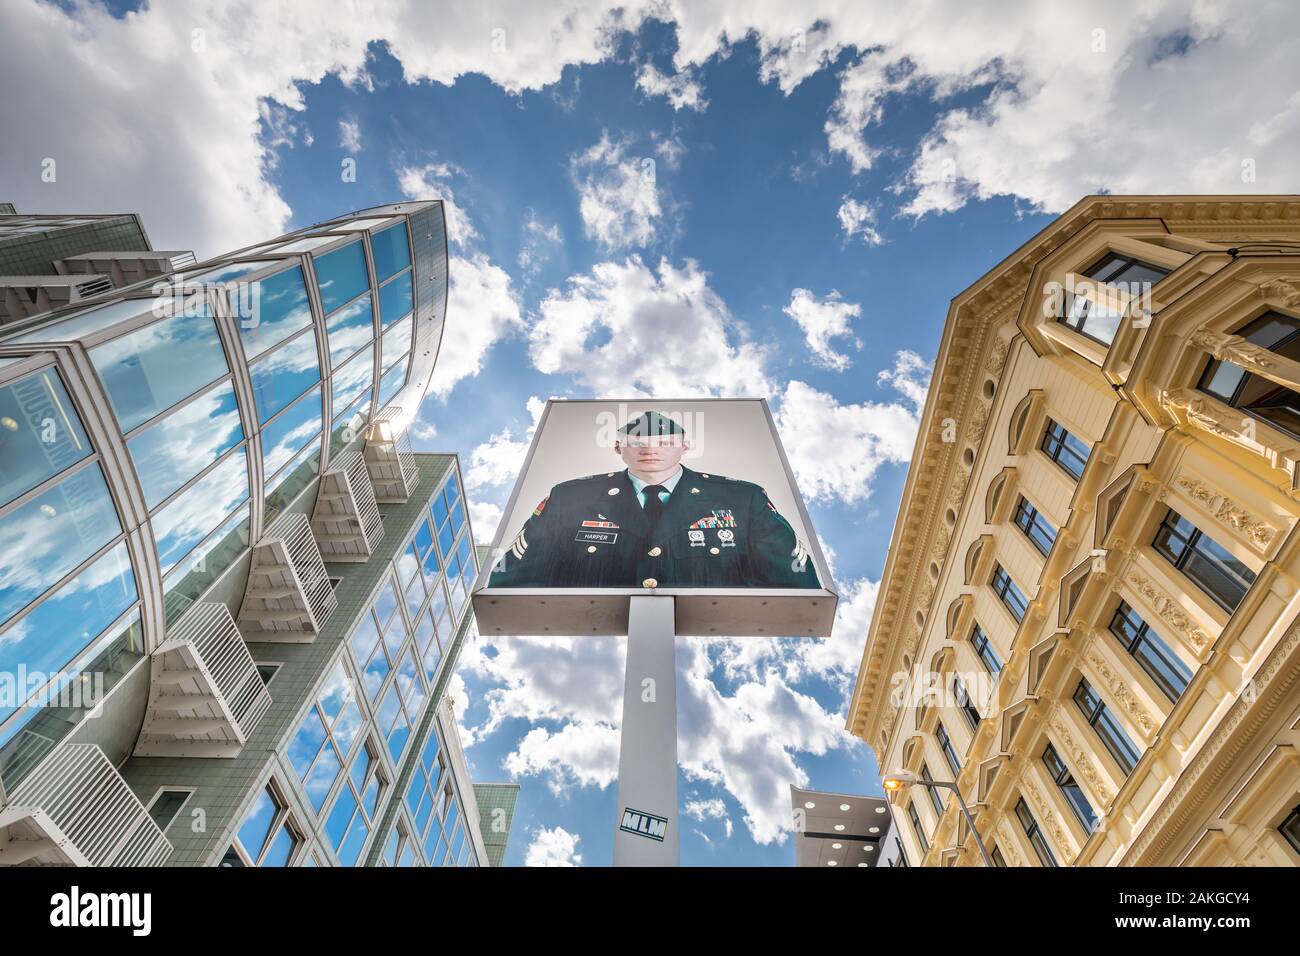 Weitwinkelansicht von unten am Checkpoint Charlie in Berlin, mit dem Bild des amerikanischen Soldaten in der Mitte, gegen eine blaue Sommerwolkenlandschaft Stockfoto